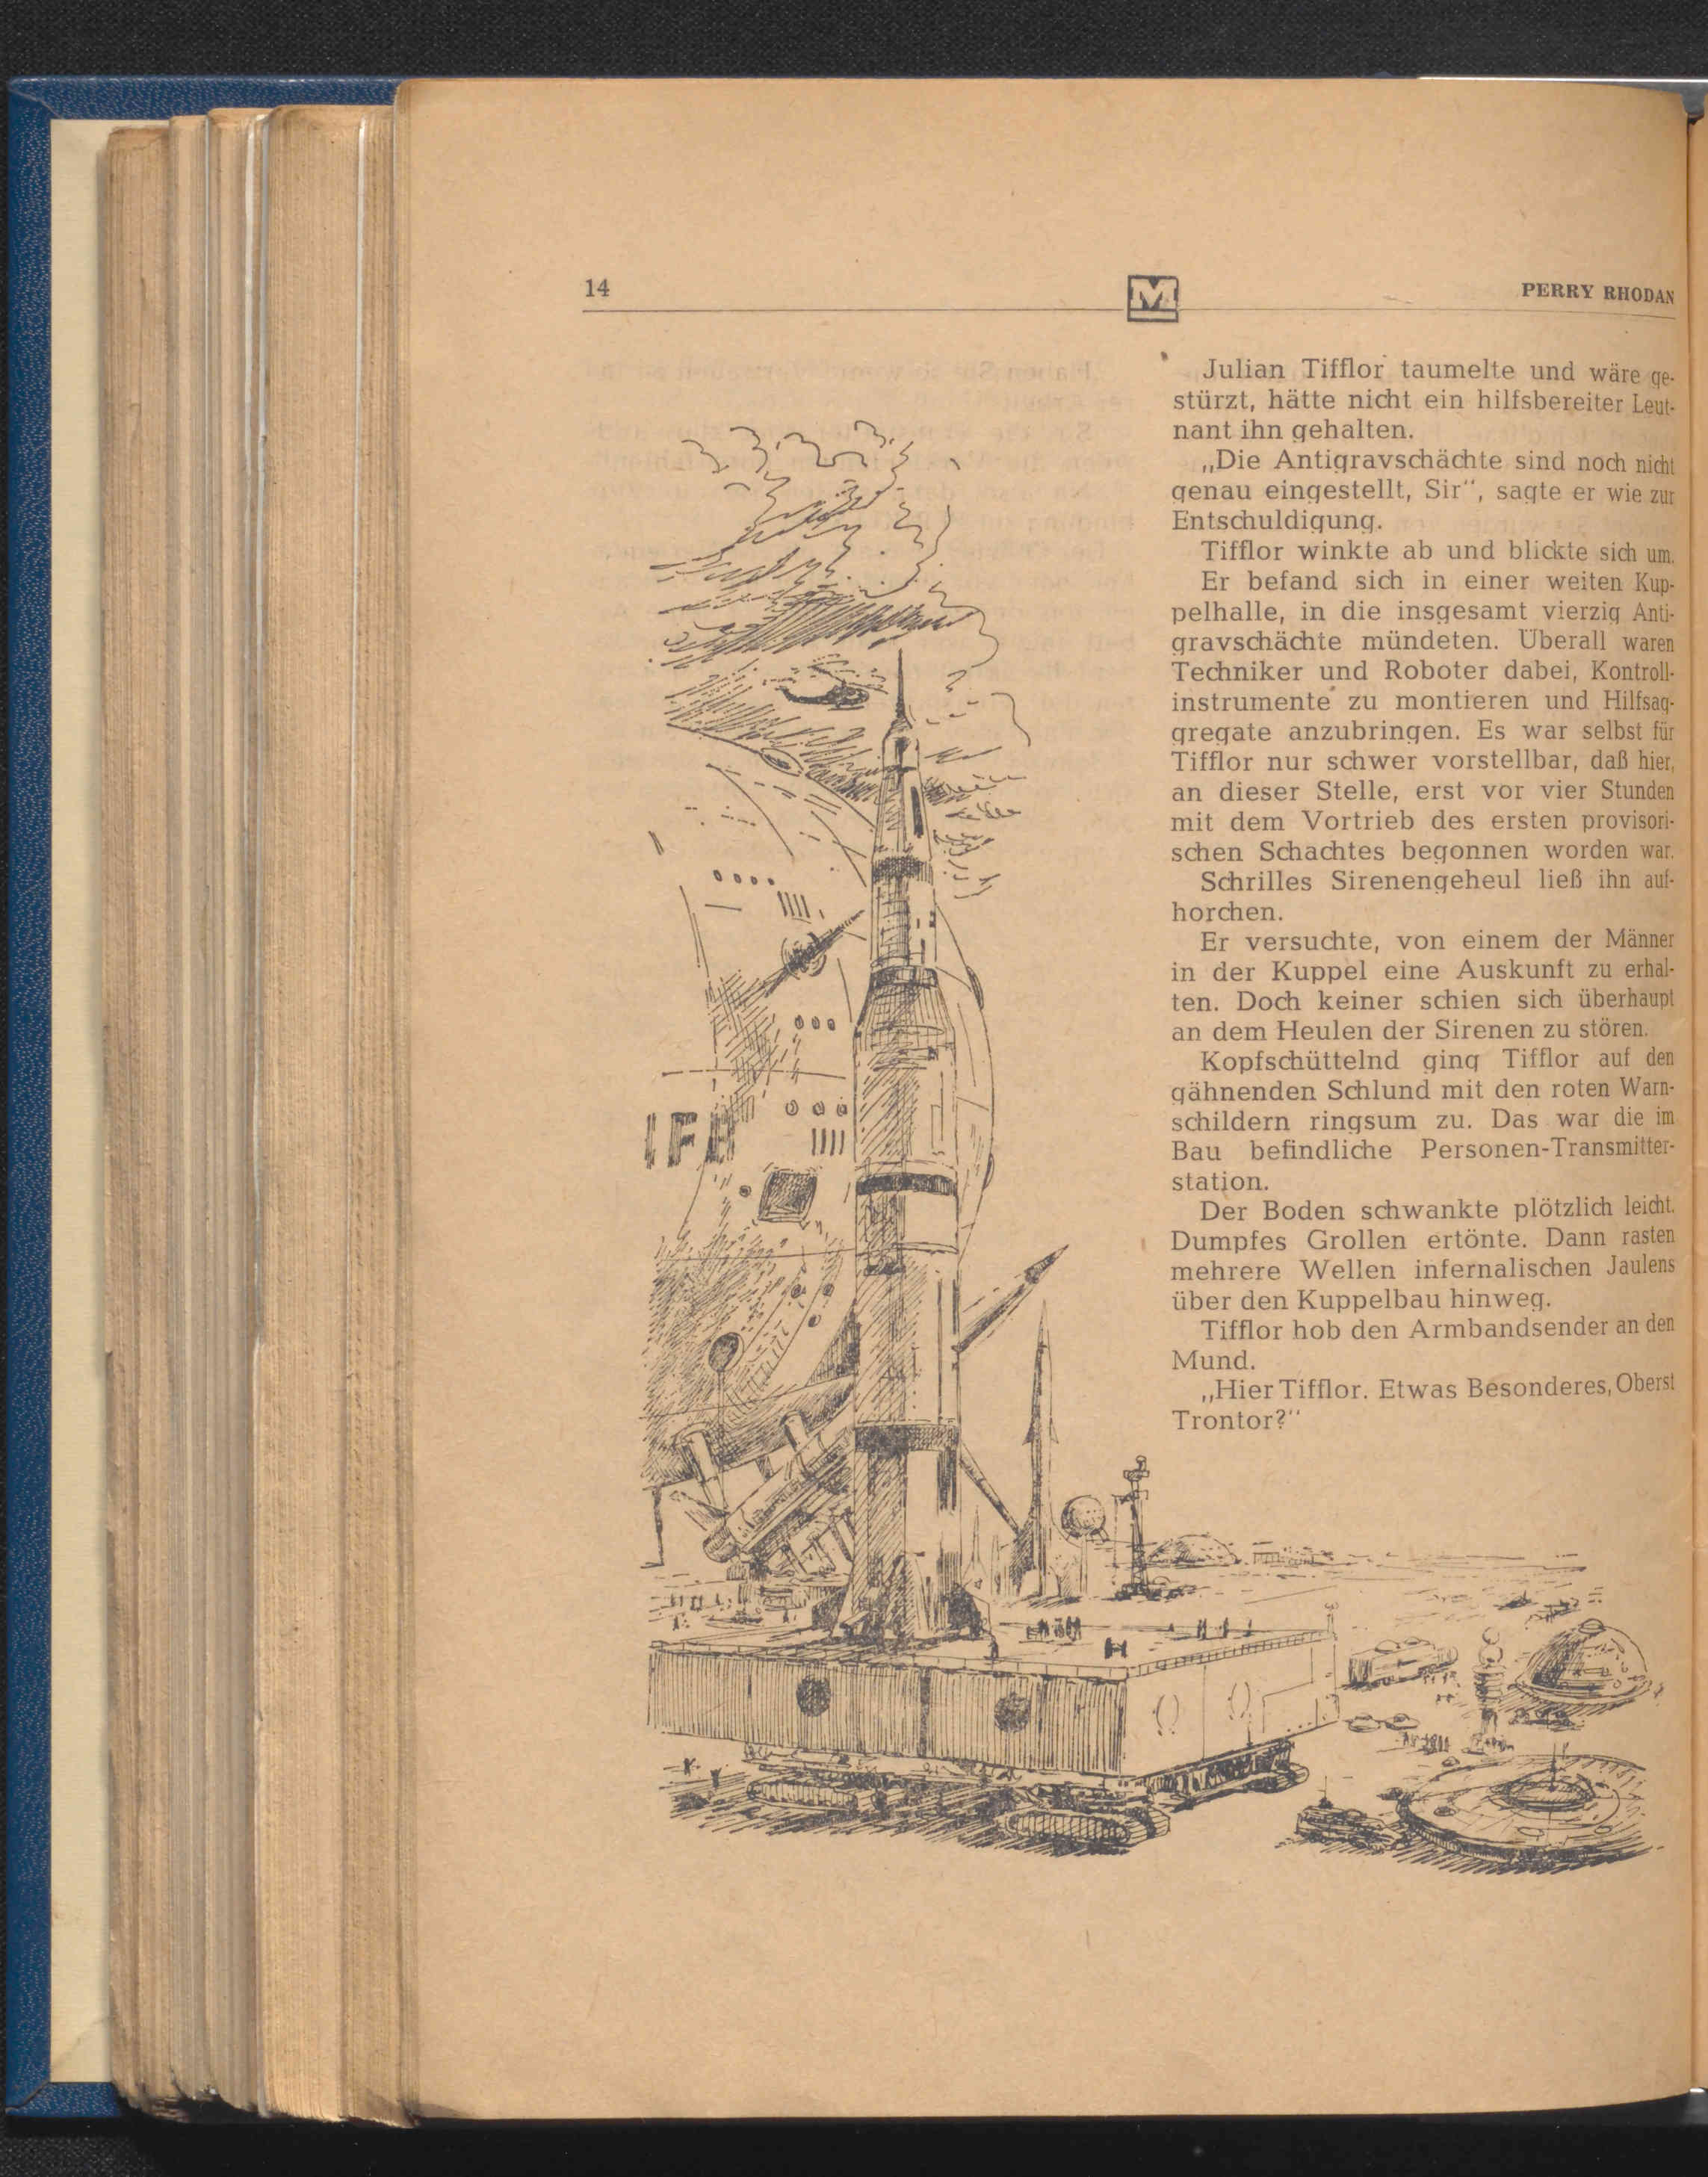 Die Abbildung zeigt eine Illustration in einem der älteren PERRY RHODAN-Hefte.